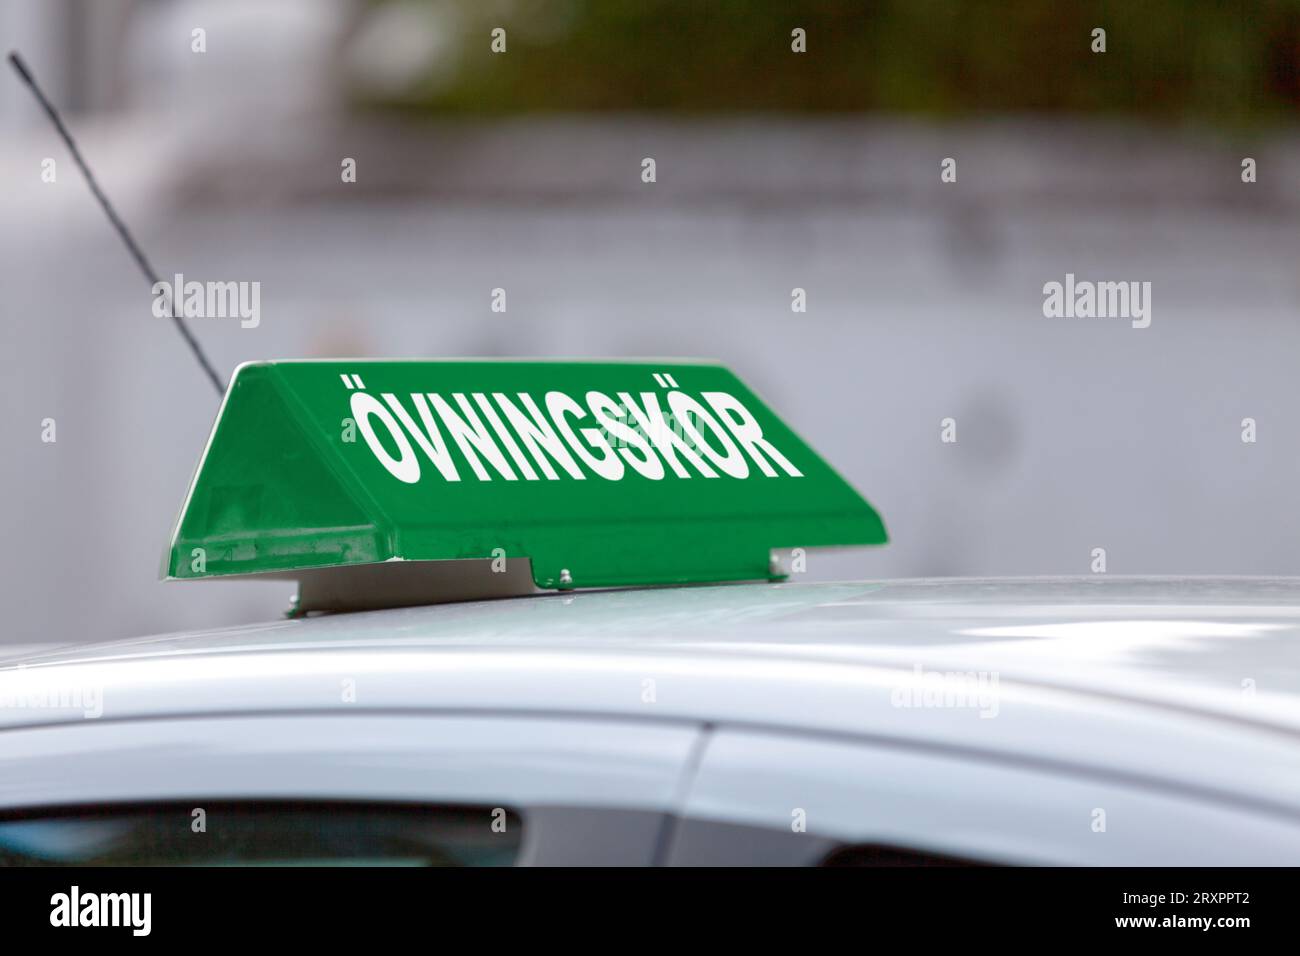 Il cartello verde sul tetto dell'auto indica "ÖVNINGSKÖR", che significa "pratica di guida in corso". Foto Stock